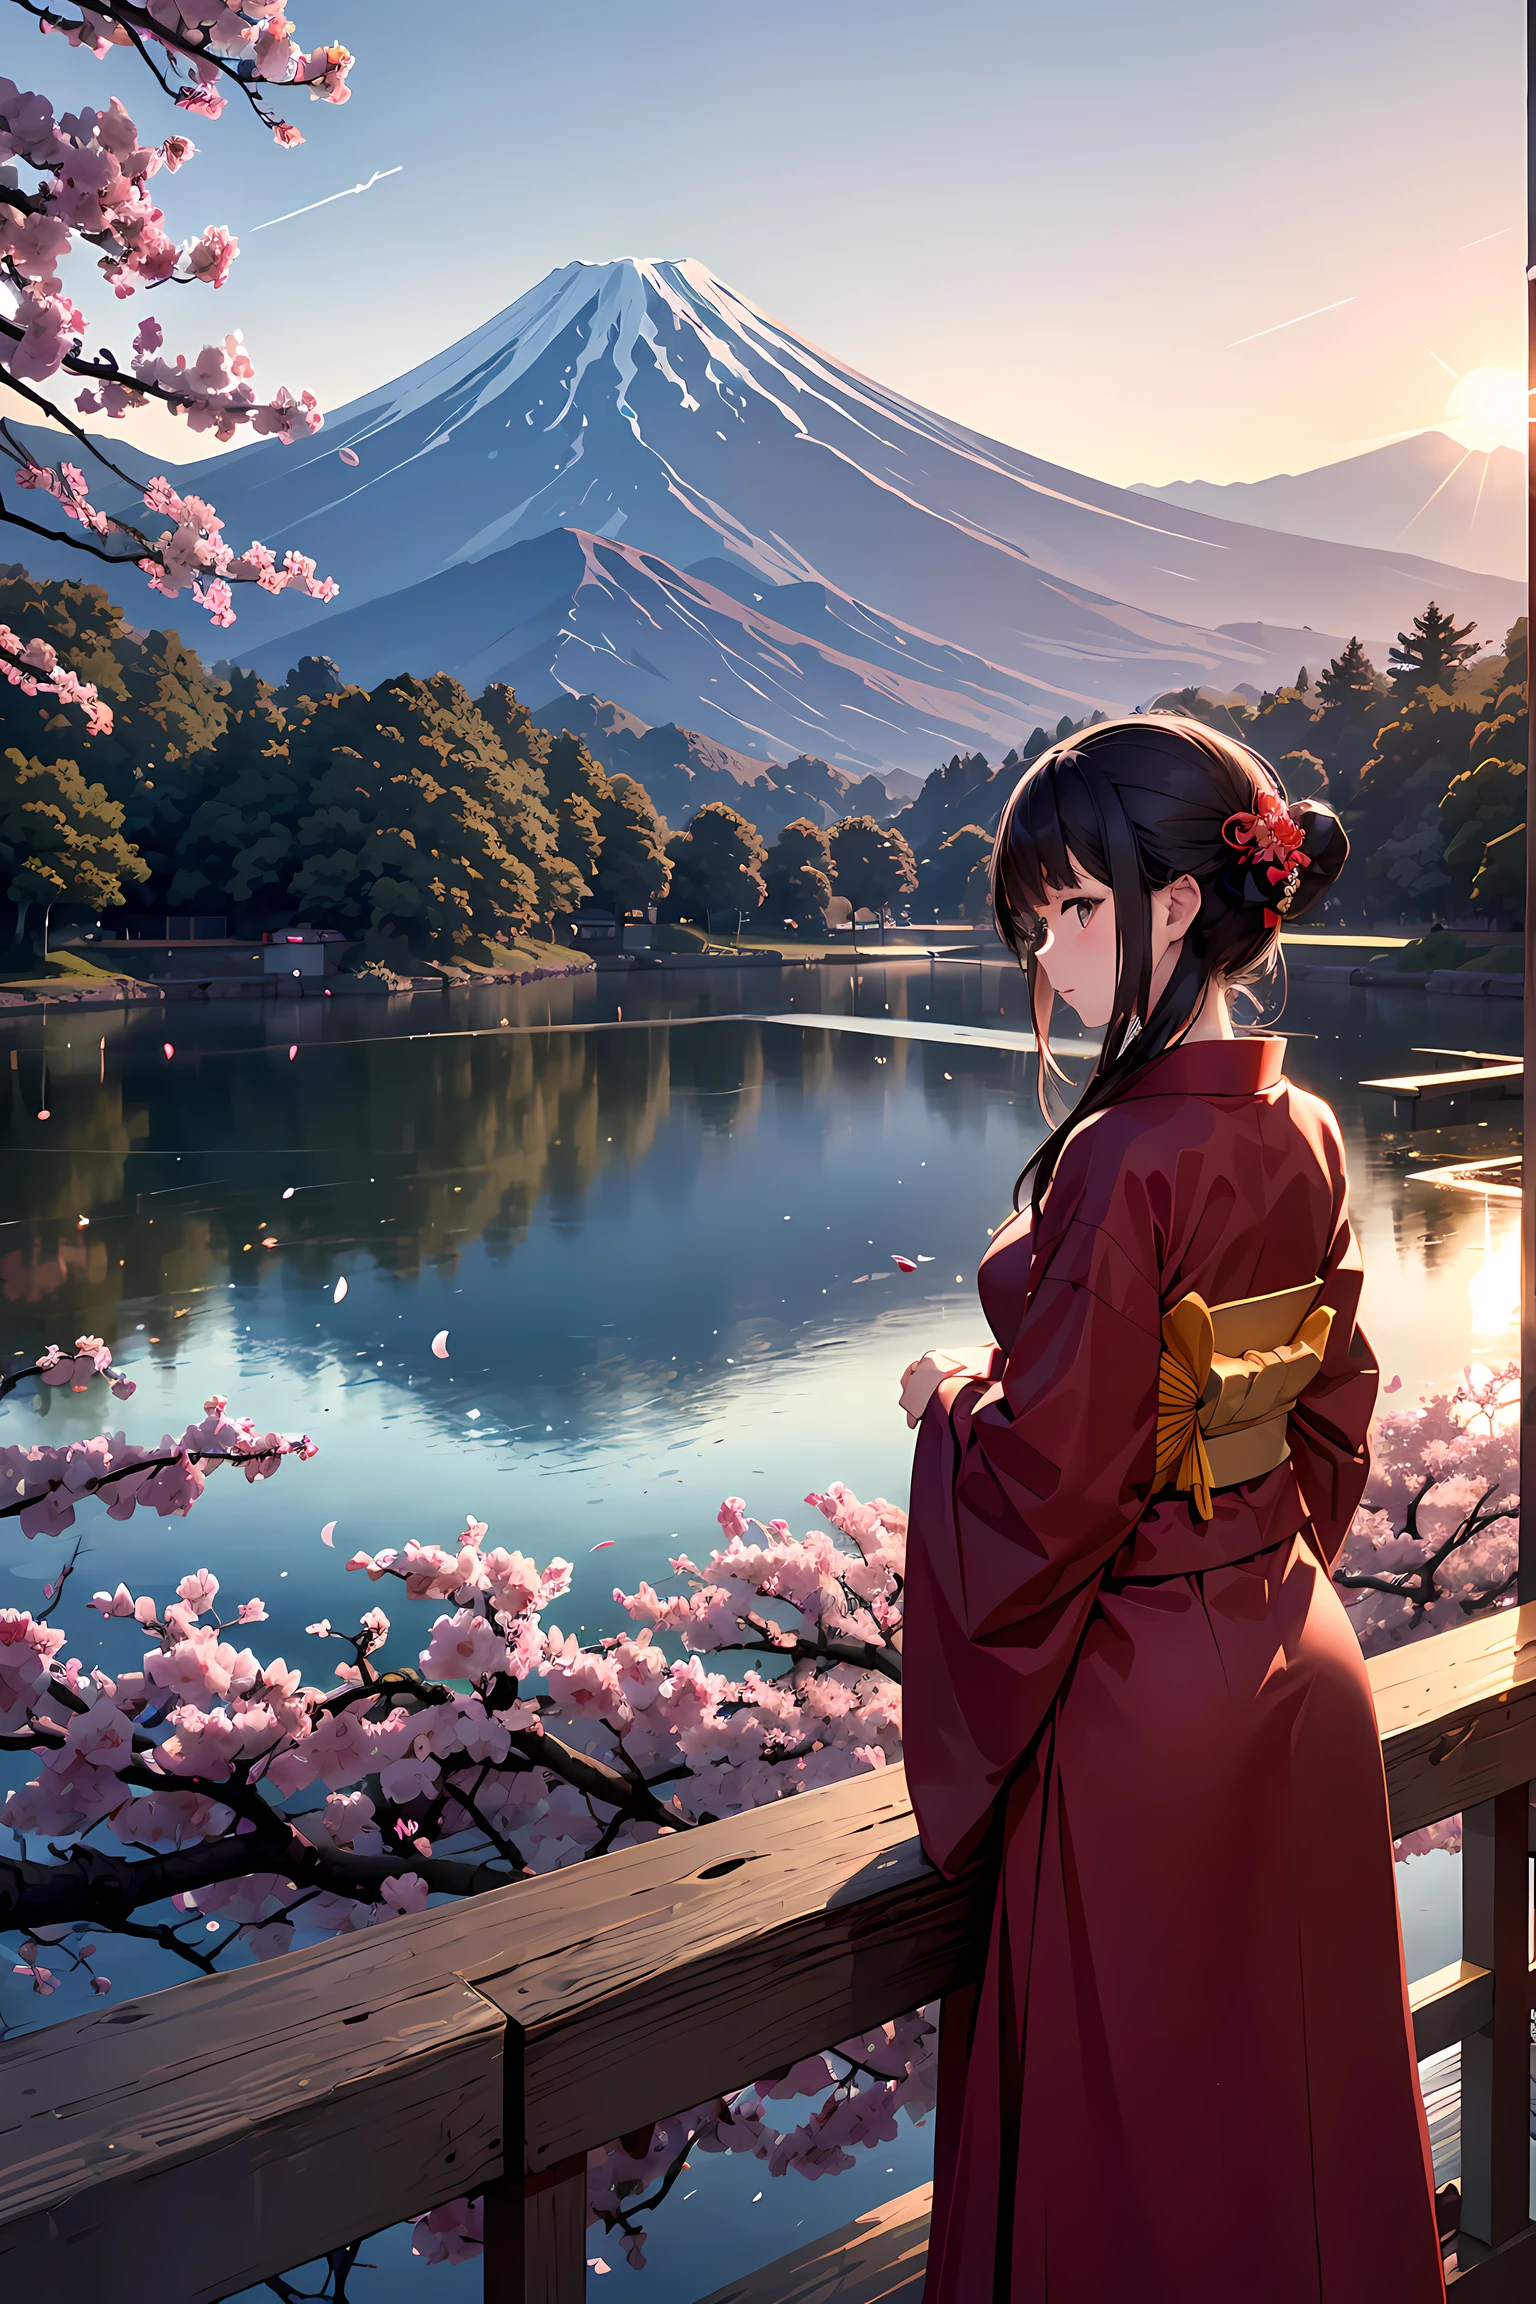 Arte cortado en papel, arte de papel colorido,  Una mujer japonesa más bella, desde atrás, retrato, red kimono, flor de cerezo, pond, monte. Fuji, atardecer,